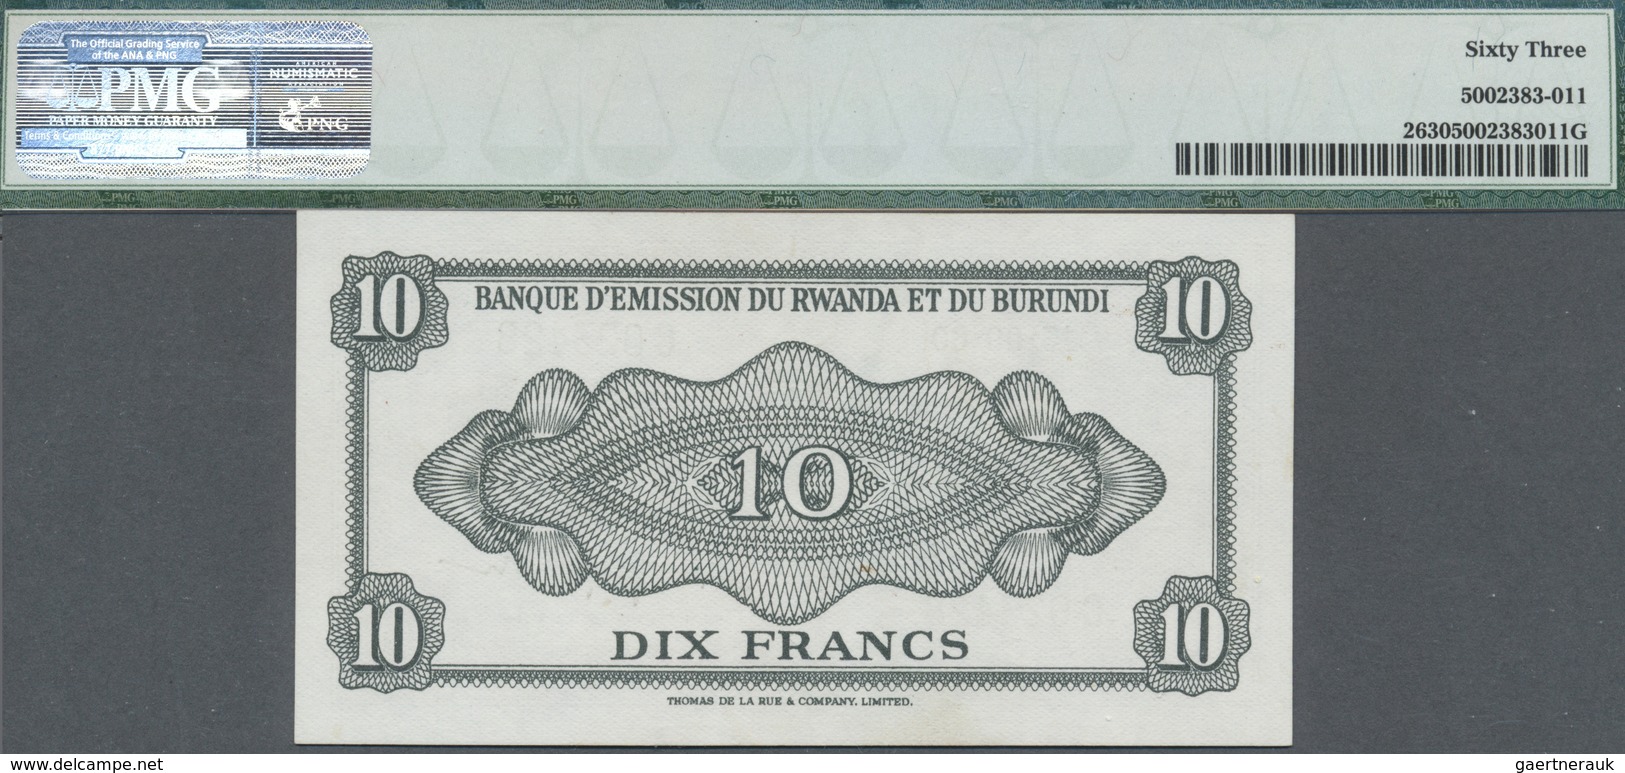 Rwanda-Burundi / Ruanda-Burundi: Banque D'Émission Du Rwanda Et Du Burundi 10 Francs 1960, P.2 In Pe - Ruanda-Urundi